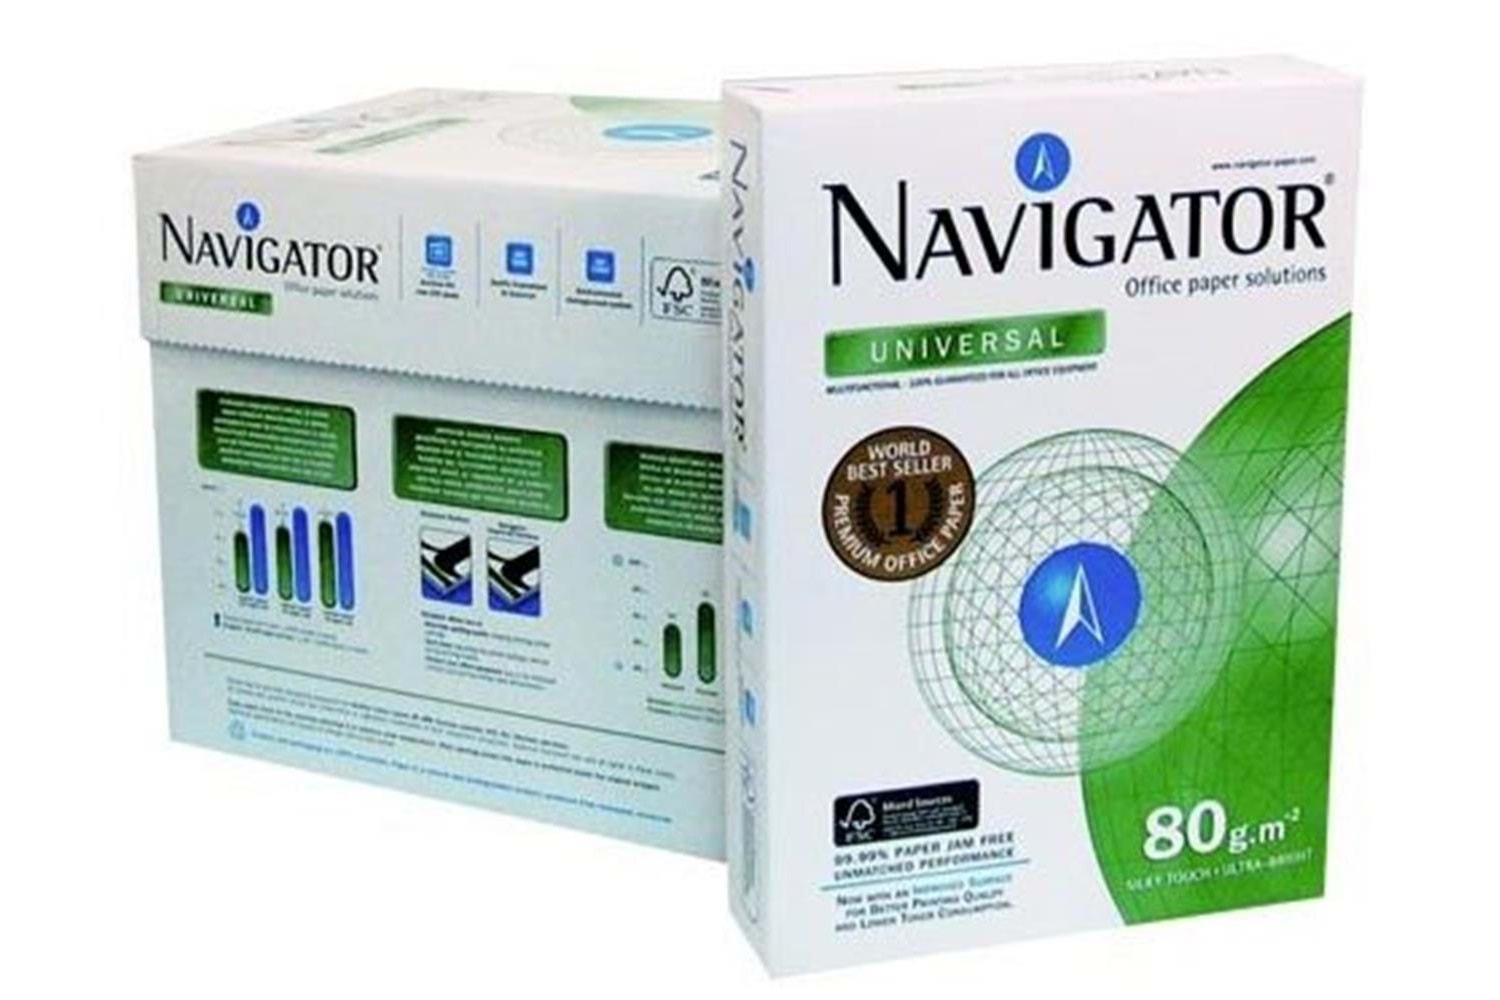 Navigator A4 Fotokopi Kağıdı 80gr-500 lü 1 koli=5 paket 1 Palet = 225 paket